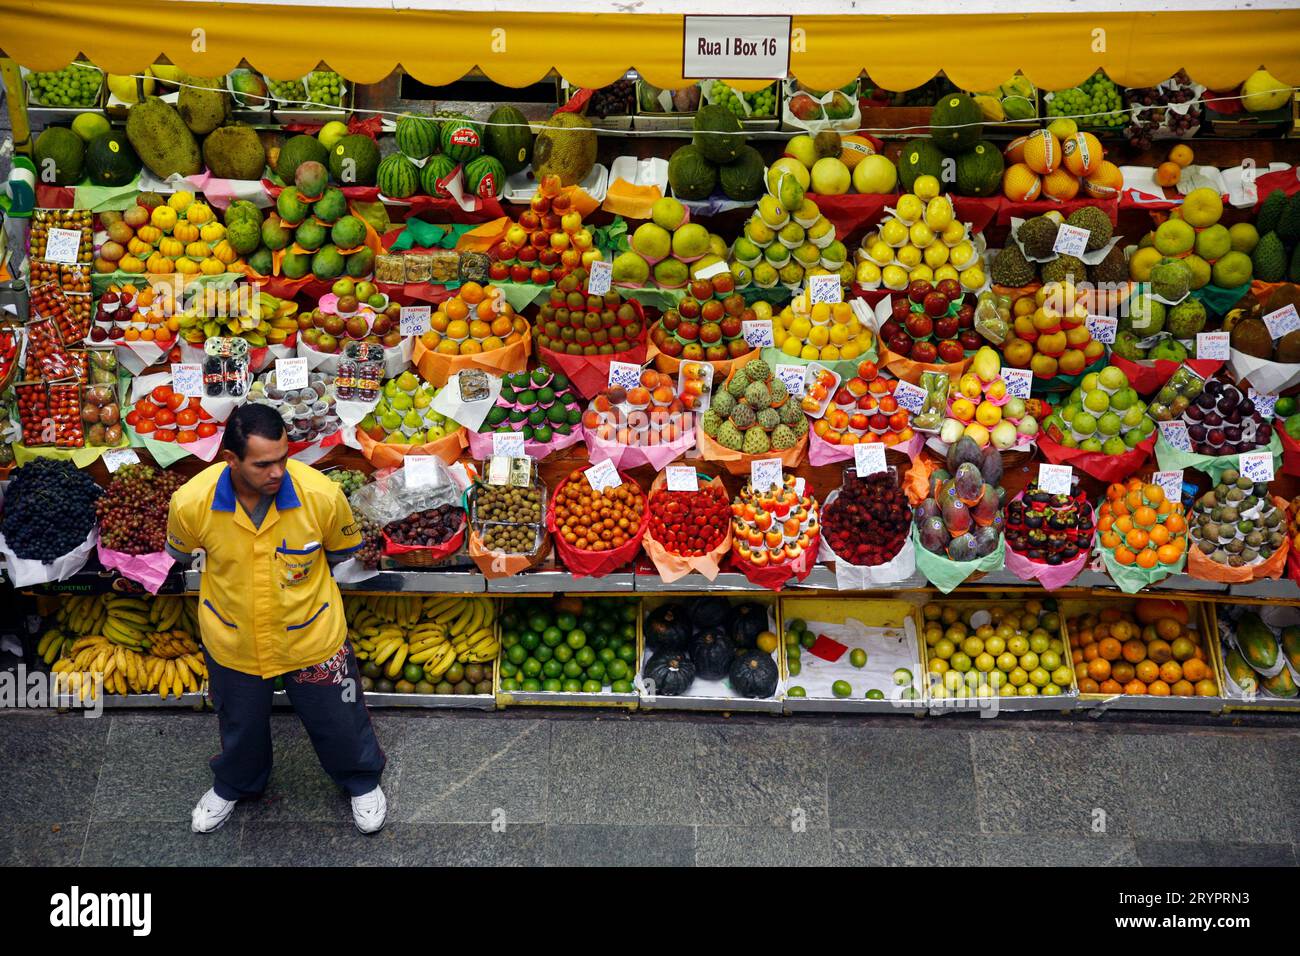 Fruit stall at Mercado Municipal, Sao Paulo, Brazil. Stock Photo